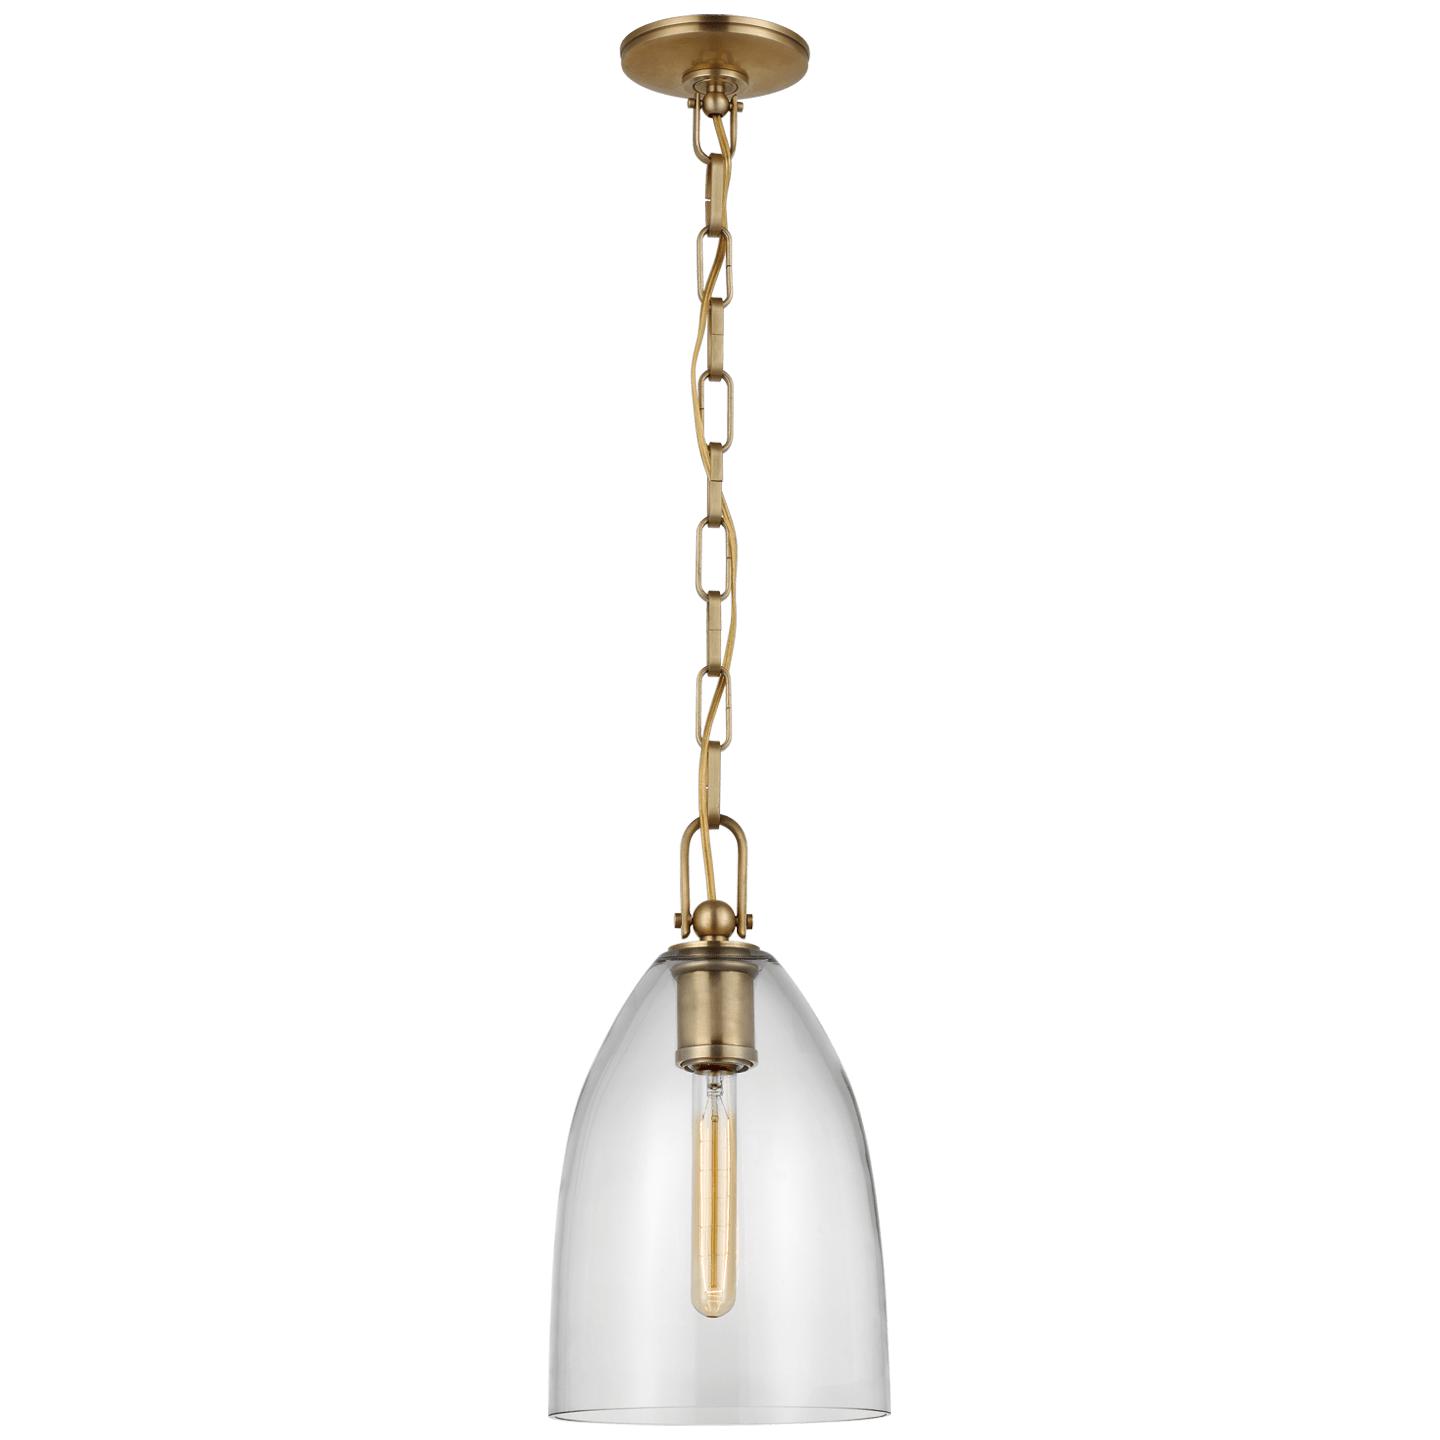 Купить Подвесной светильник Andros Medium Pendant в интернет-магазине roooms.ru